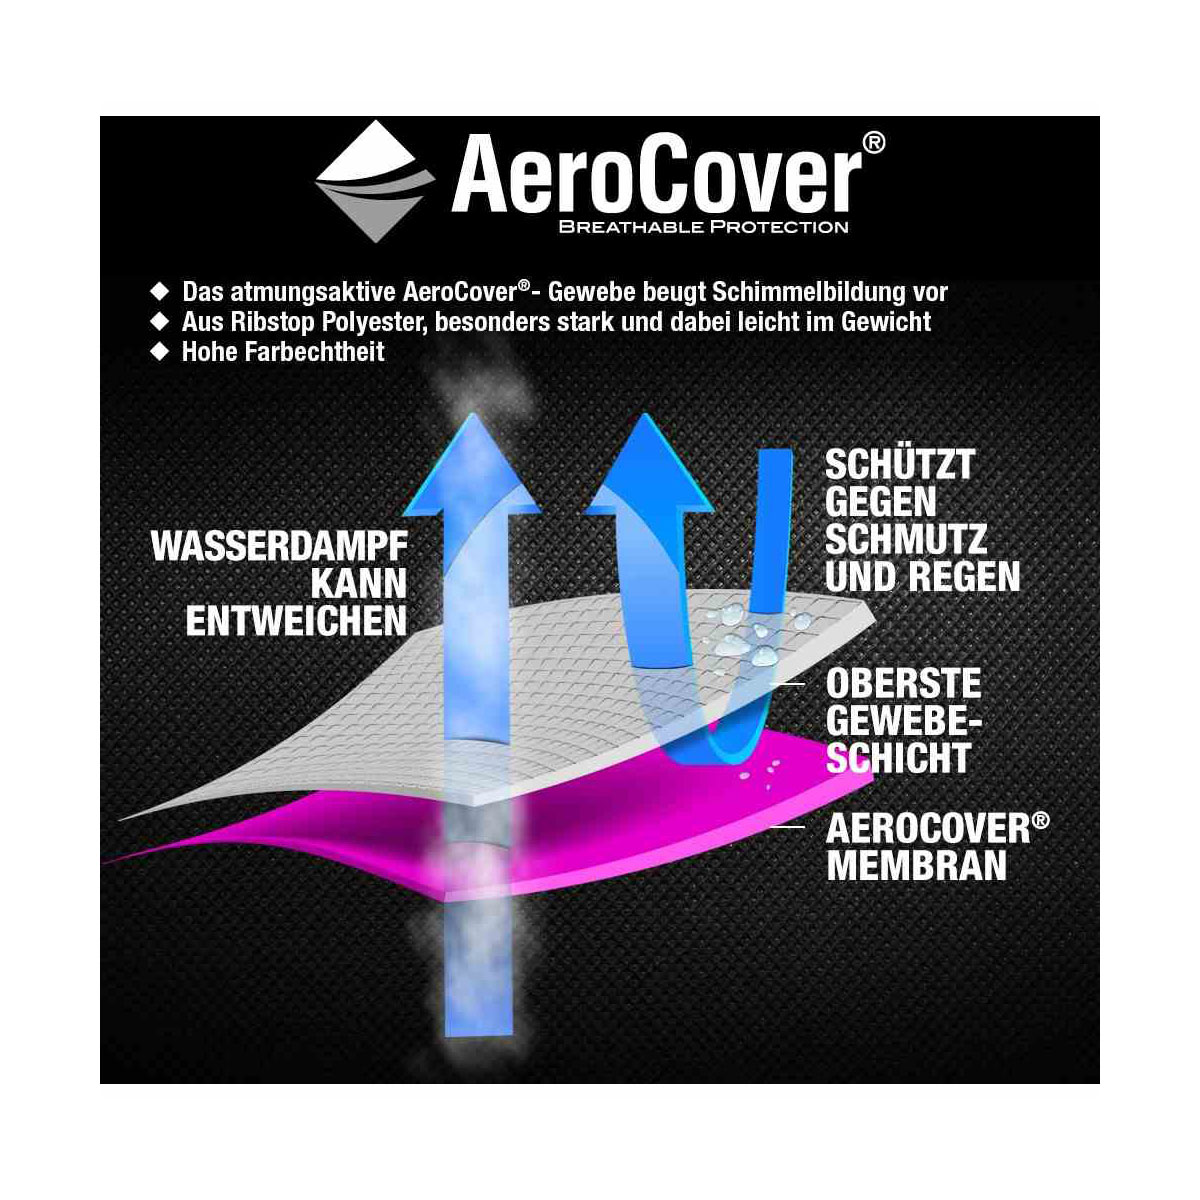 AeroCover Schutzhülle für Loungesessel, 75x78x65/110 cm, anthrazit